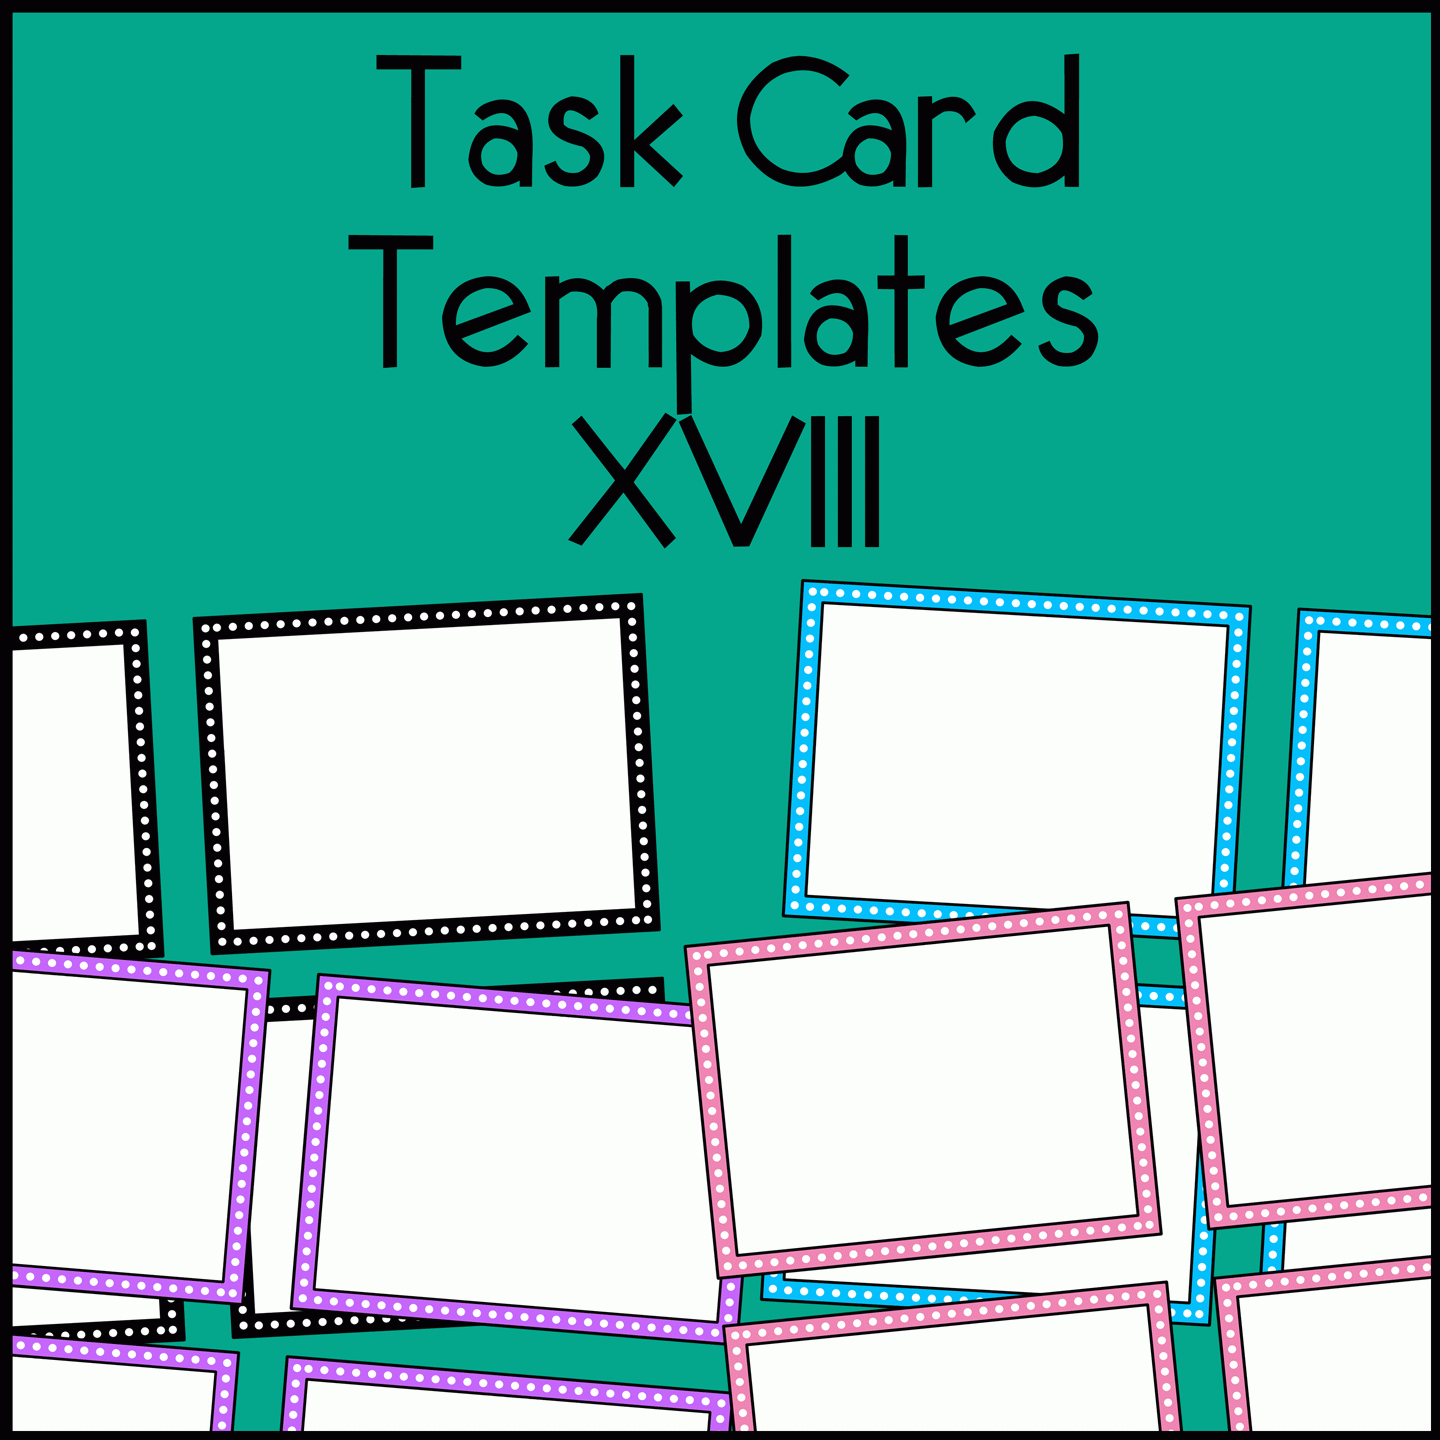 create a blan taskcard